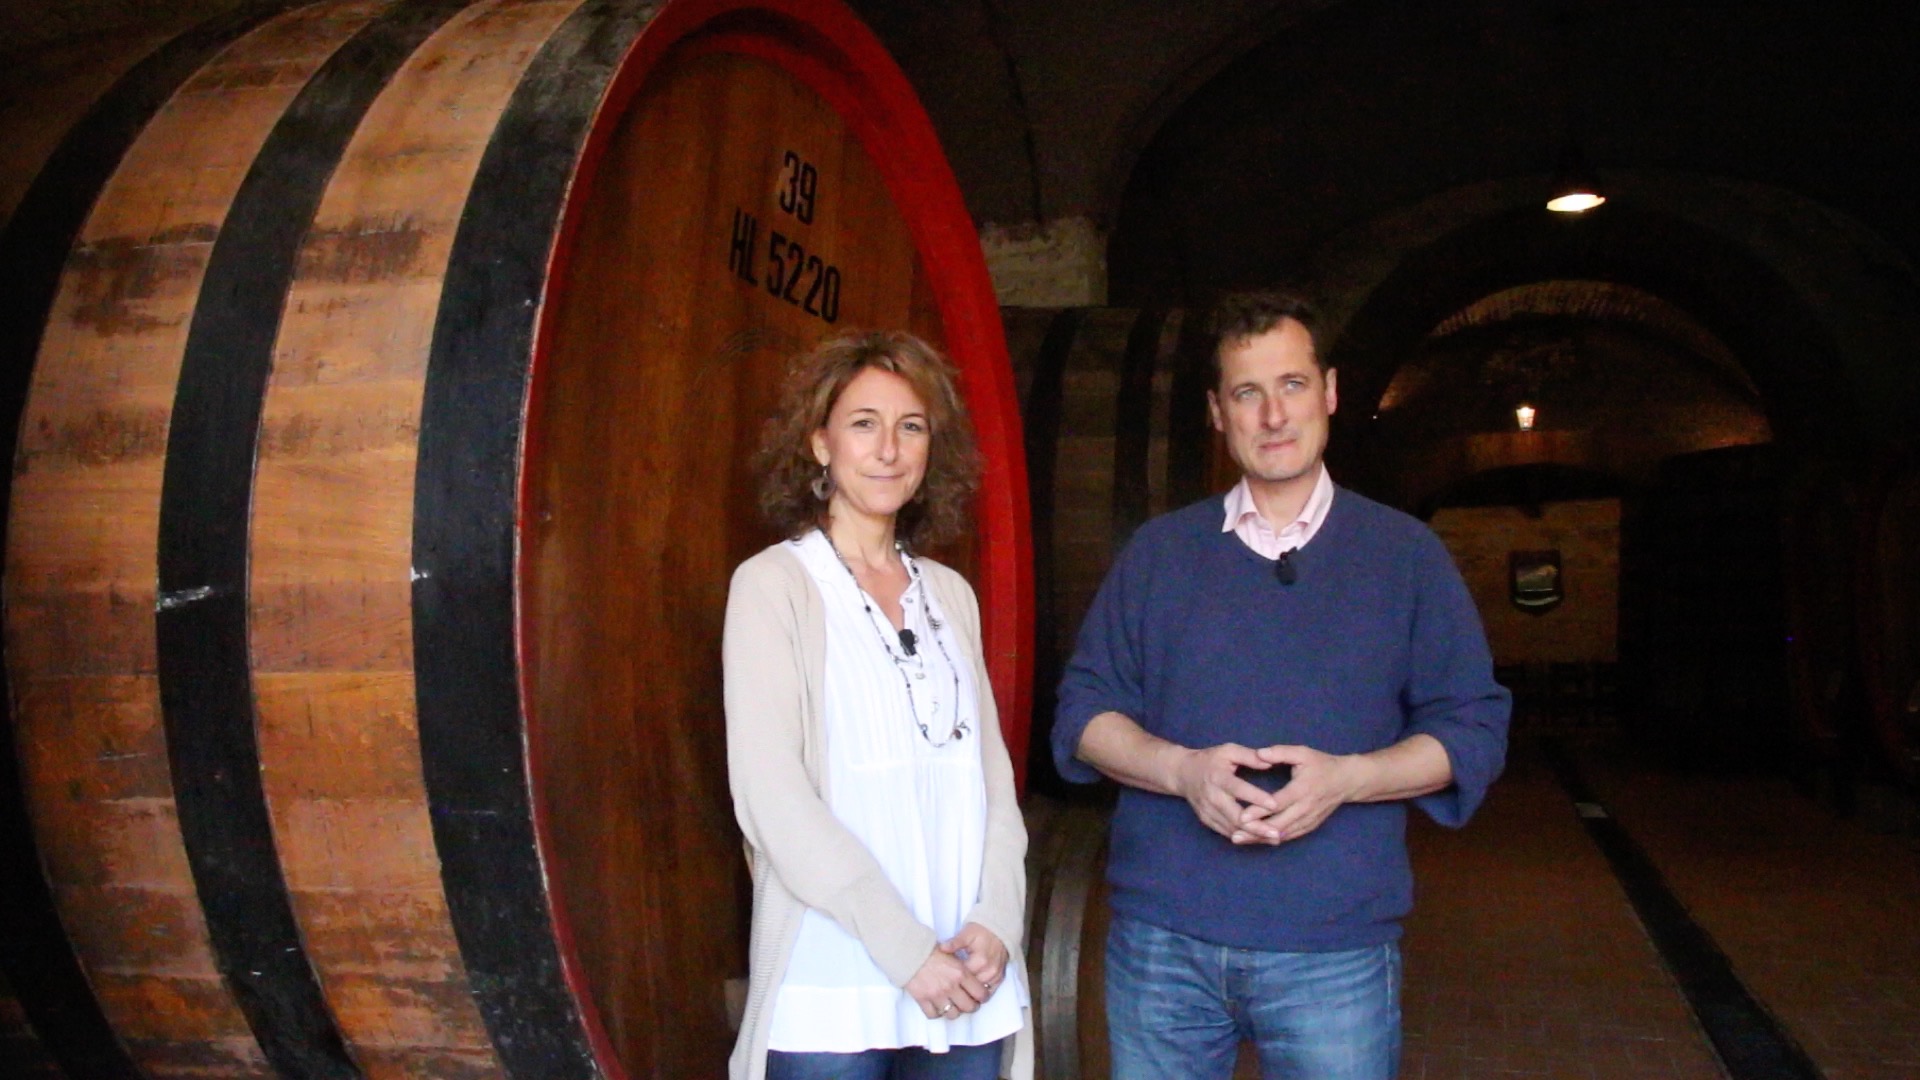 The "noble wine" Vino Nobile di Montepulciano: Miriam Caporali and Valdipiatta